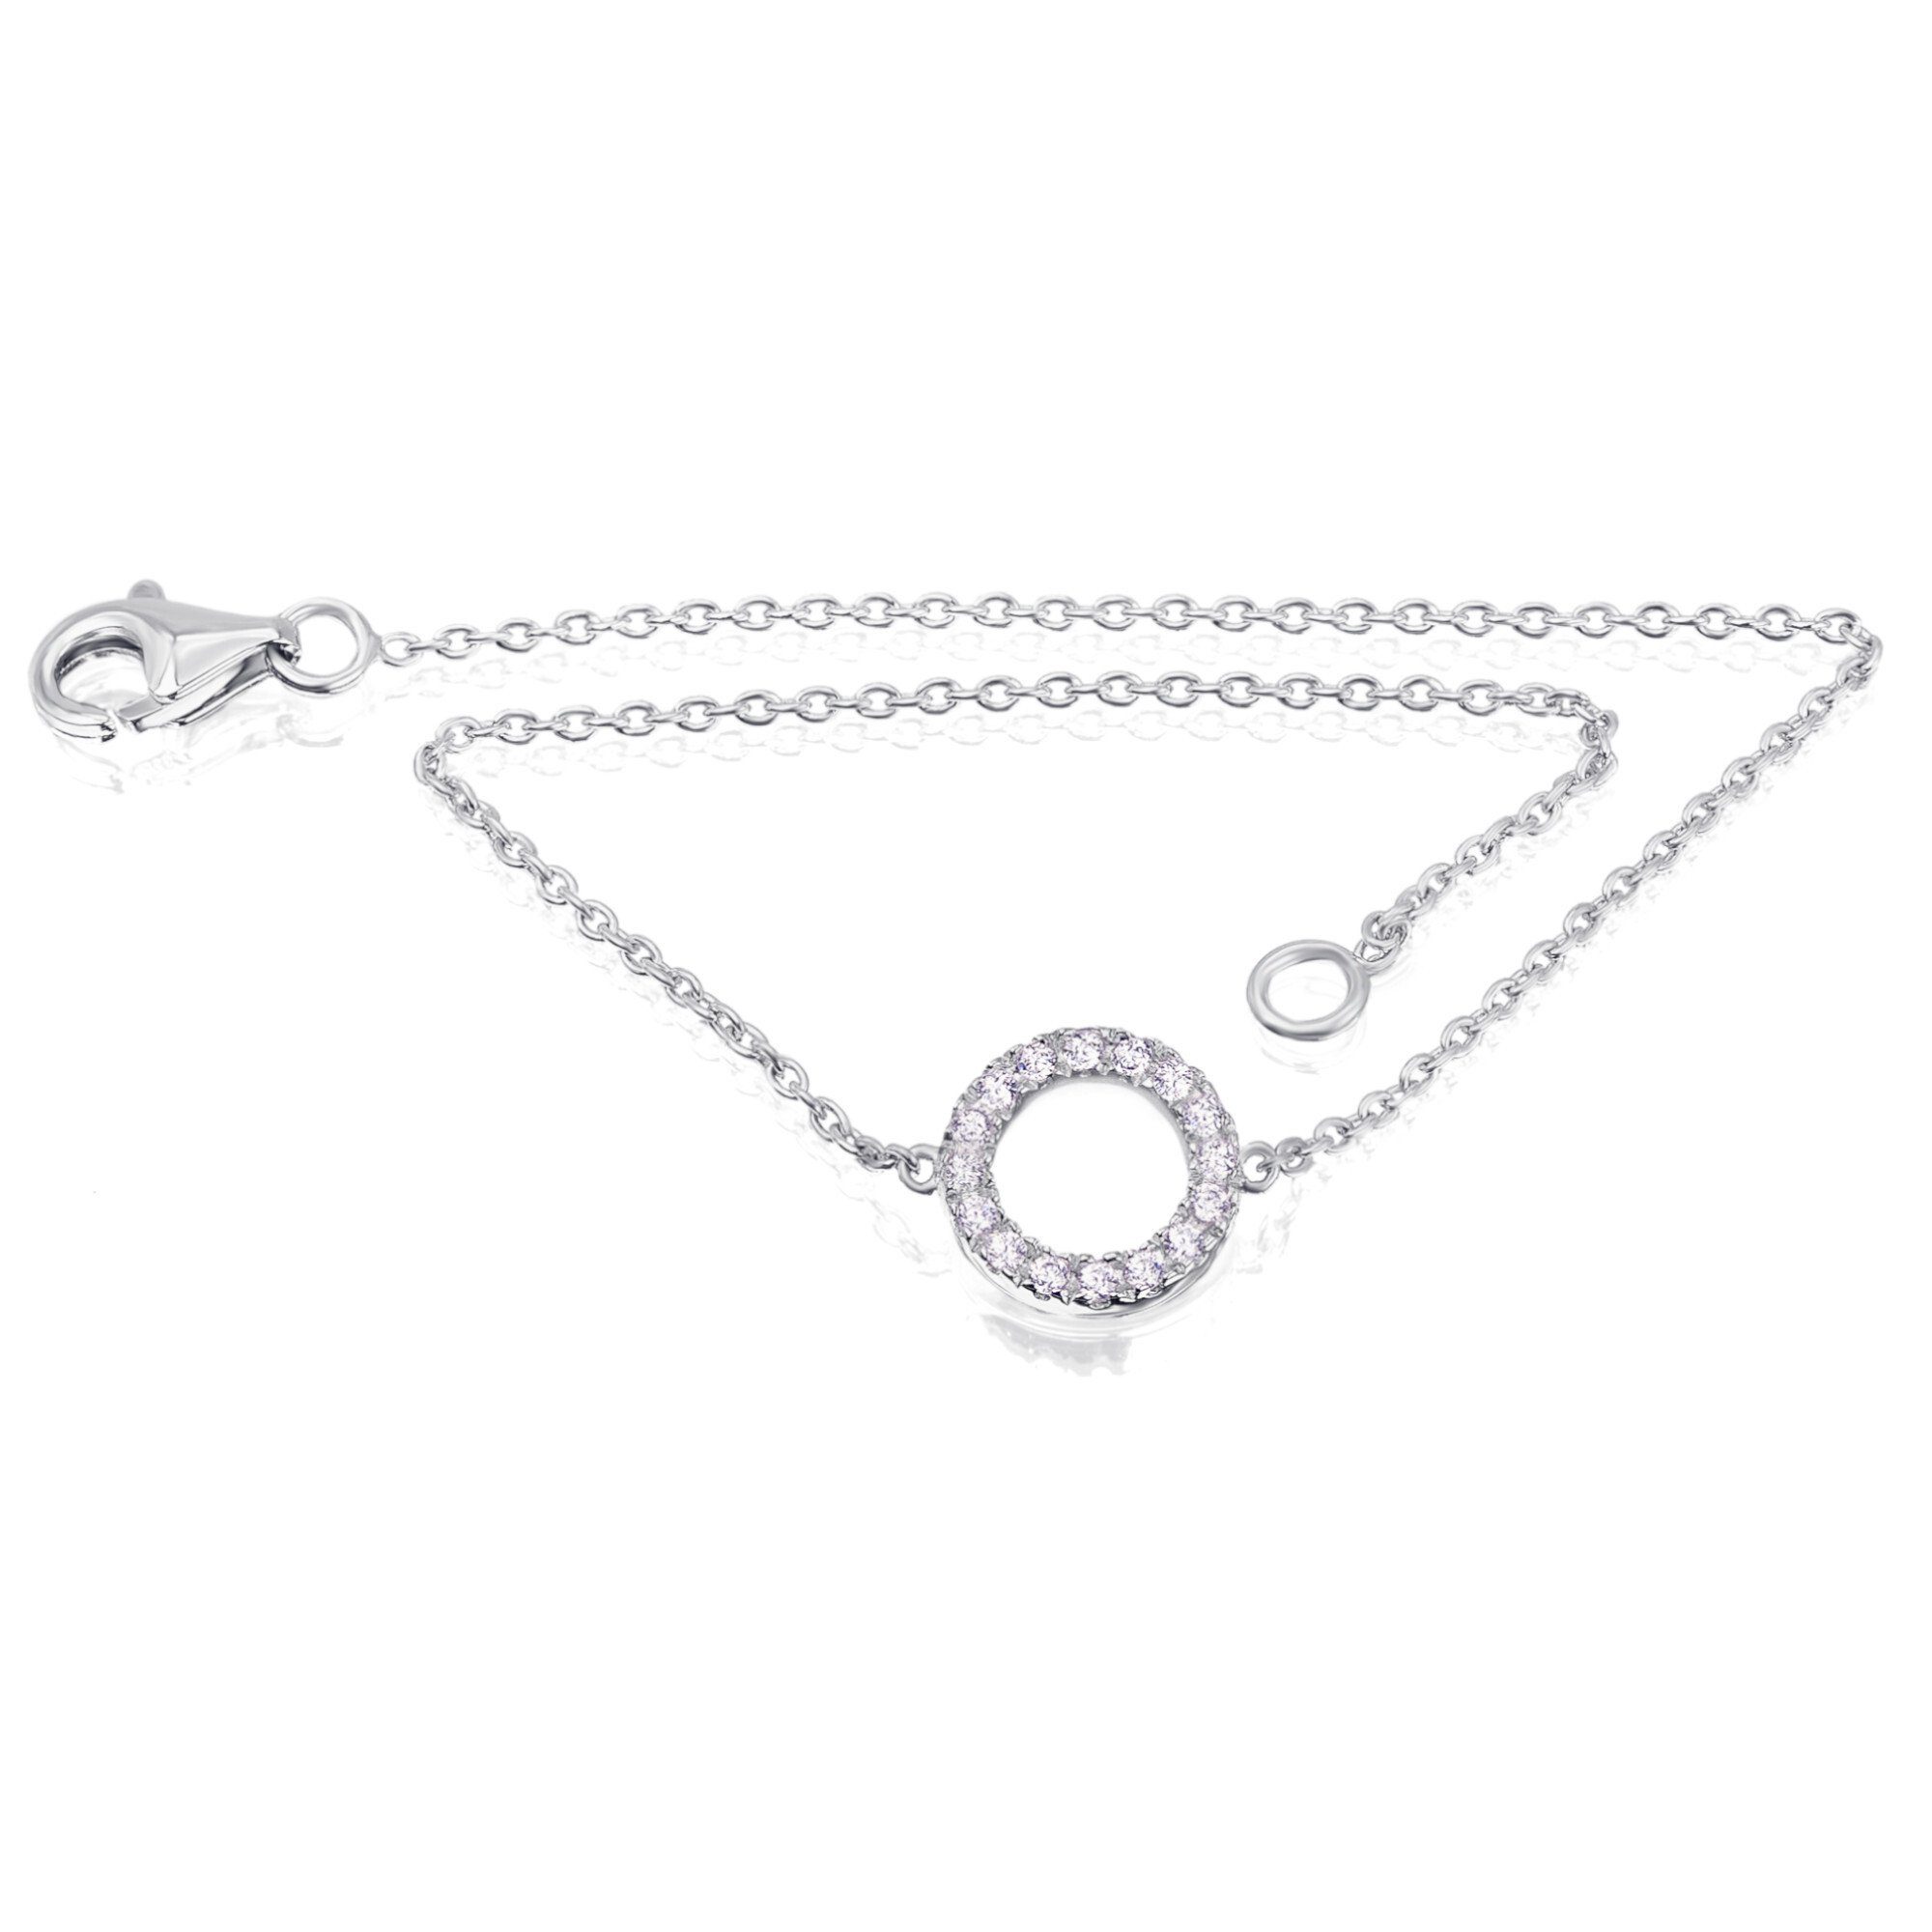 ONE ELEMENT Silberarmband Zirkonia Kreis Armband aus 925 Silber 18 cm Ø, Damen  Silber Schmuck Kreis, Qualität aus Deutschland